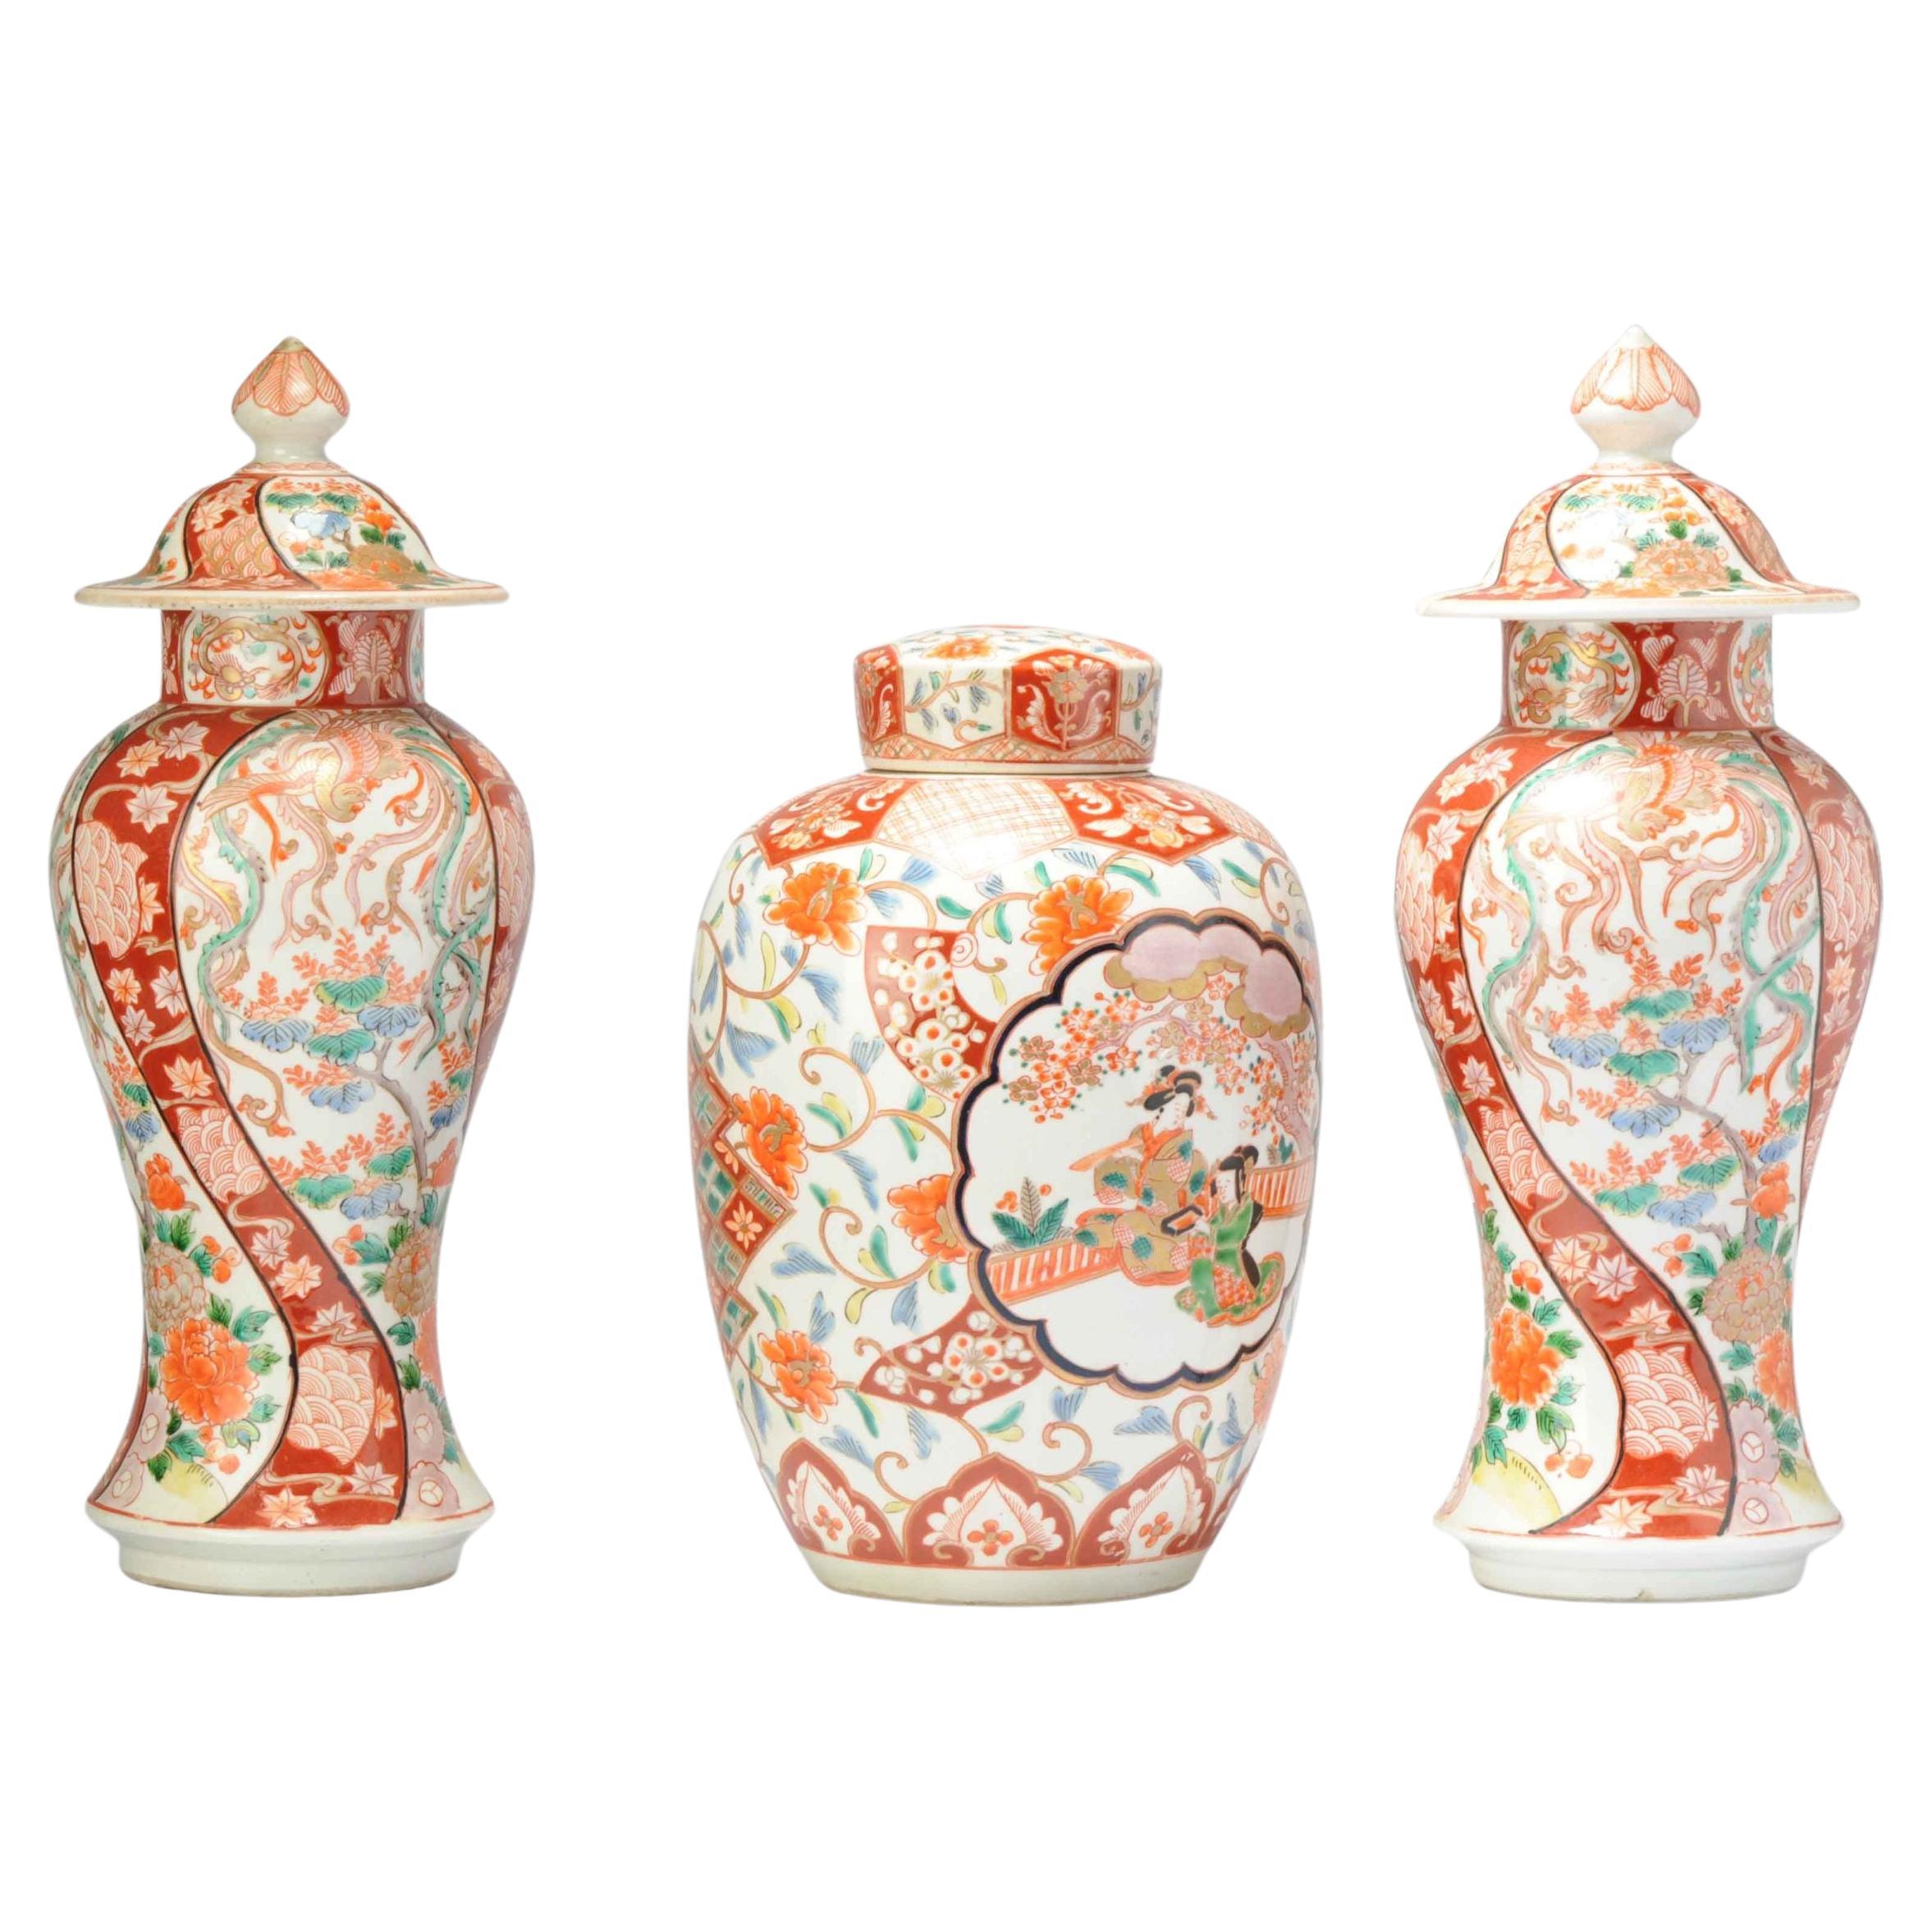 Ensemble de 3 vases japonais Arita à garnitures anciennes et une jarre à gingembre, 19ème siècle